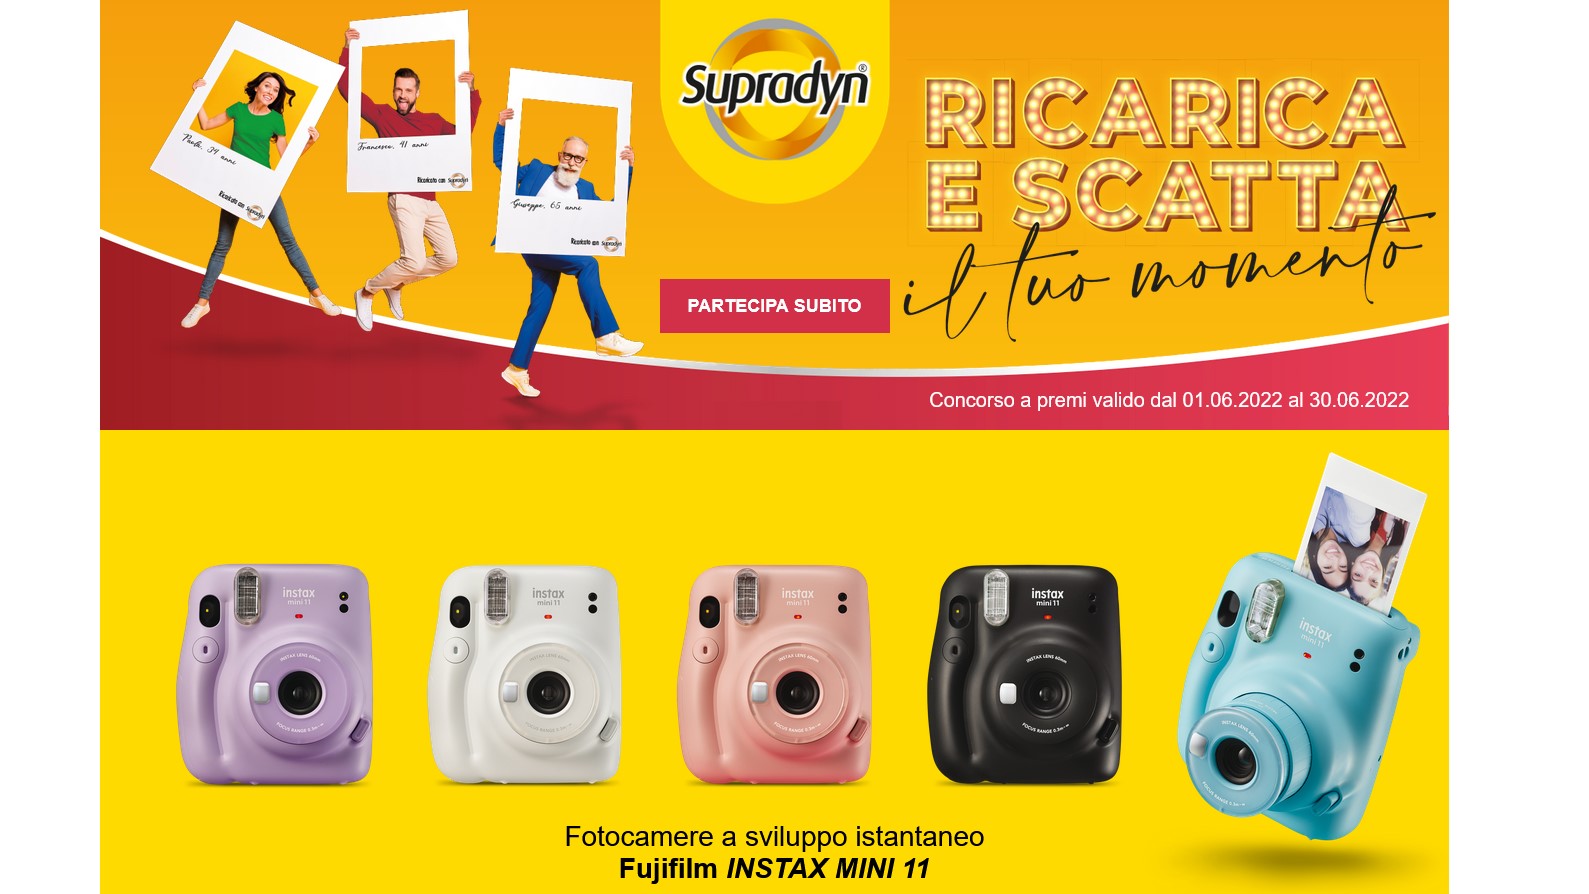 Concorso Supradyn “Ricarica e scatta con il tuo momento”: in palio 50 macchine fotografiche Fujifilm INSTAX MINI 11